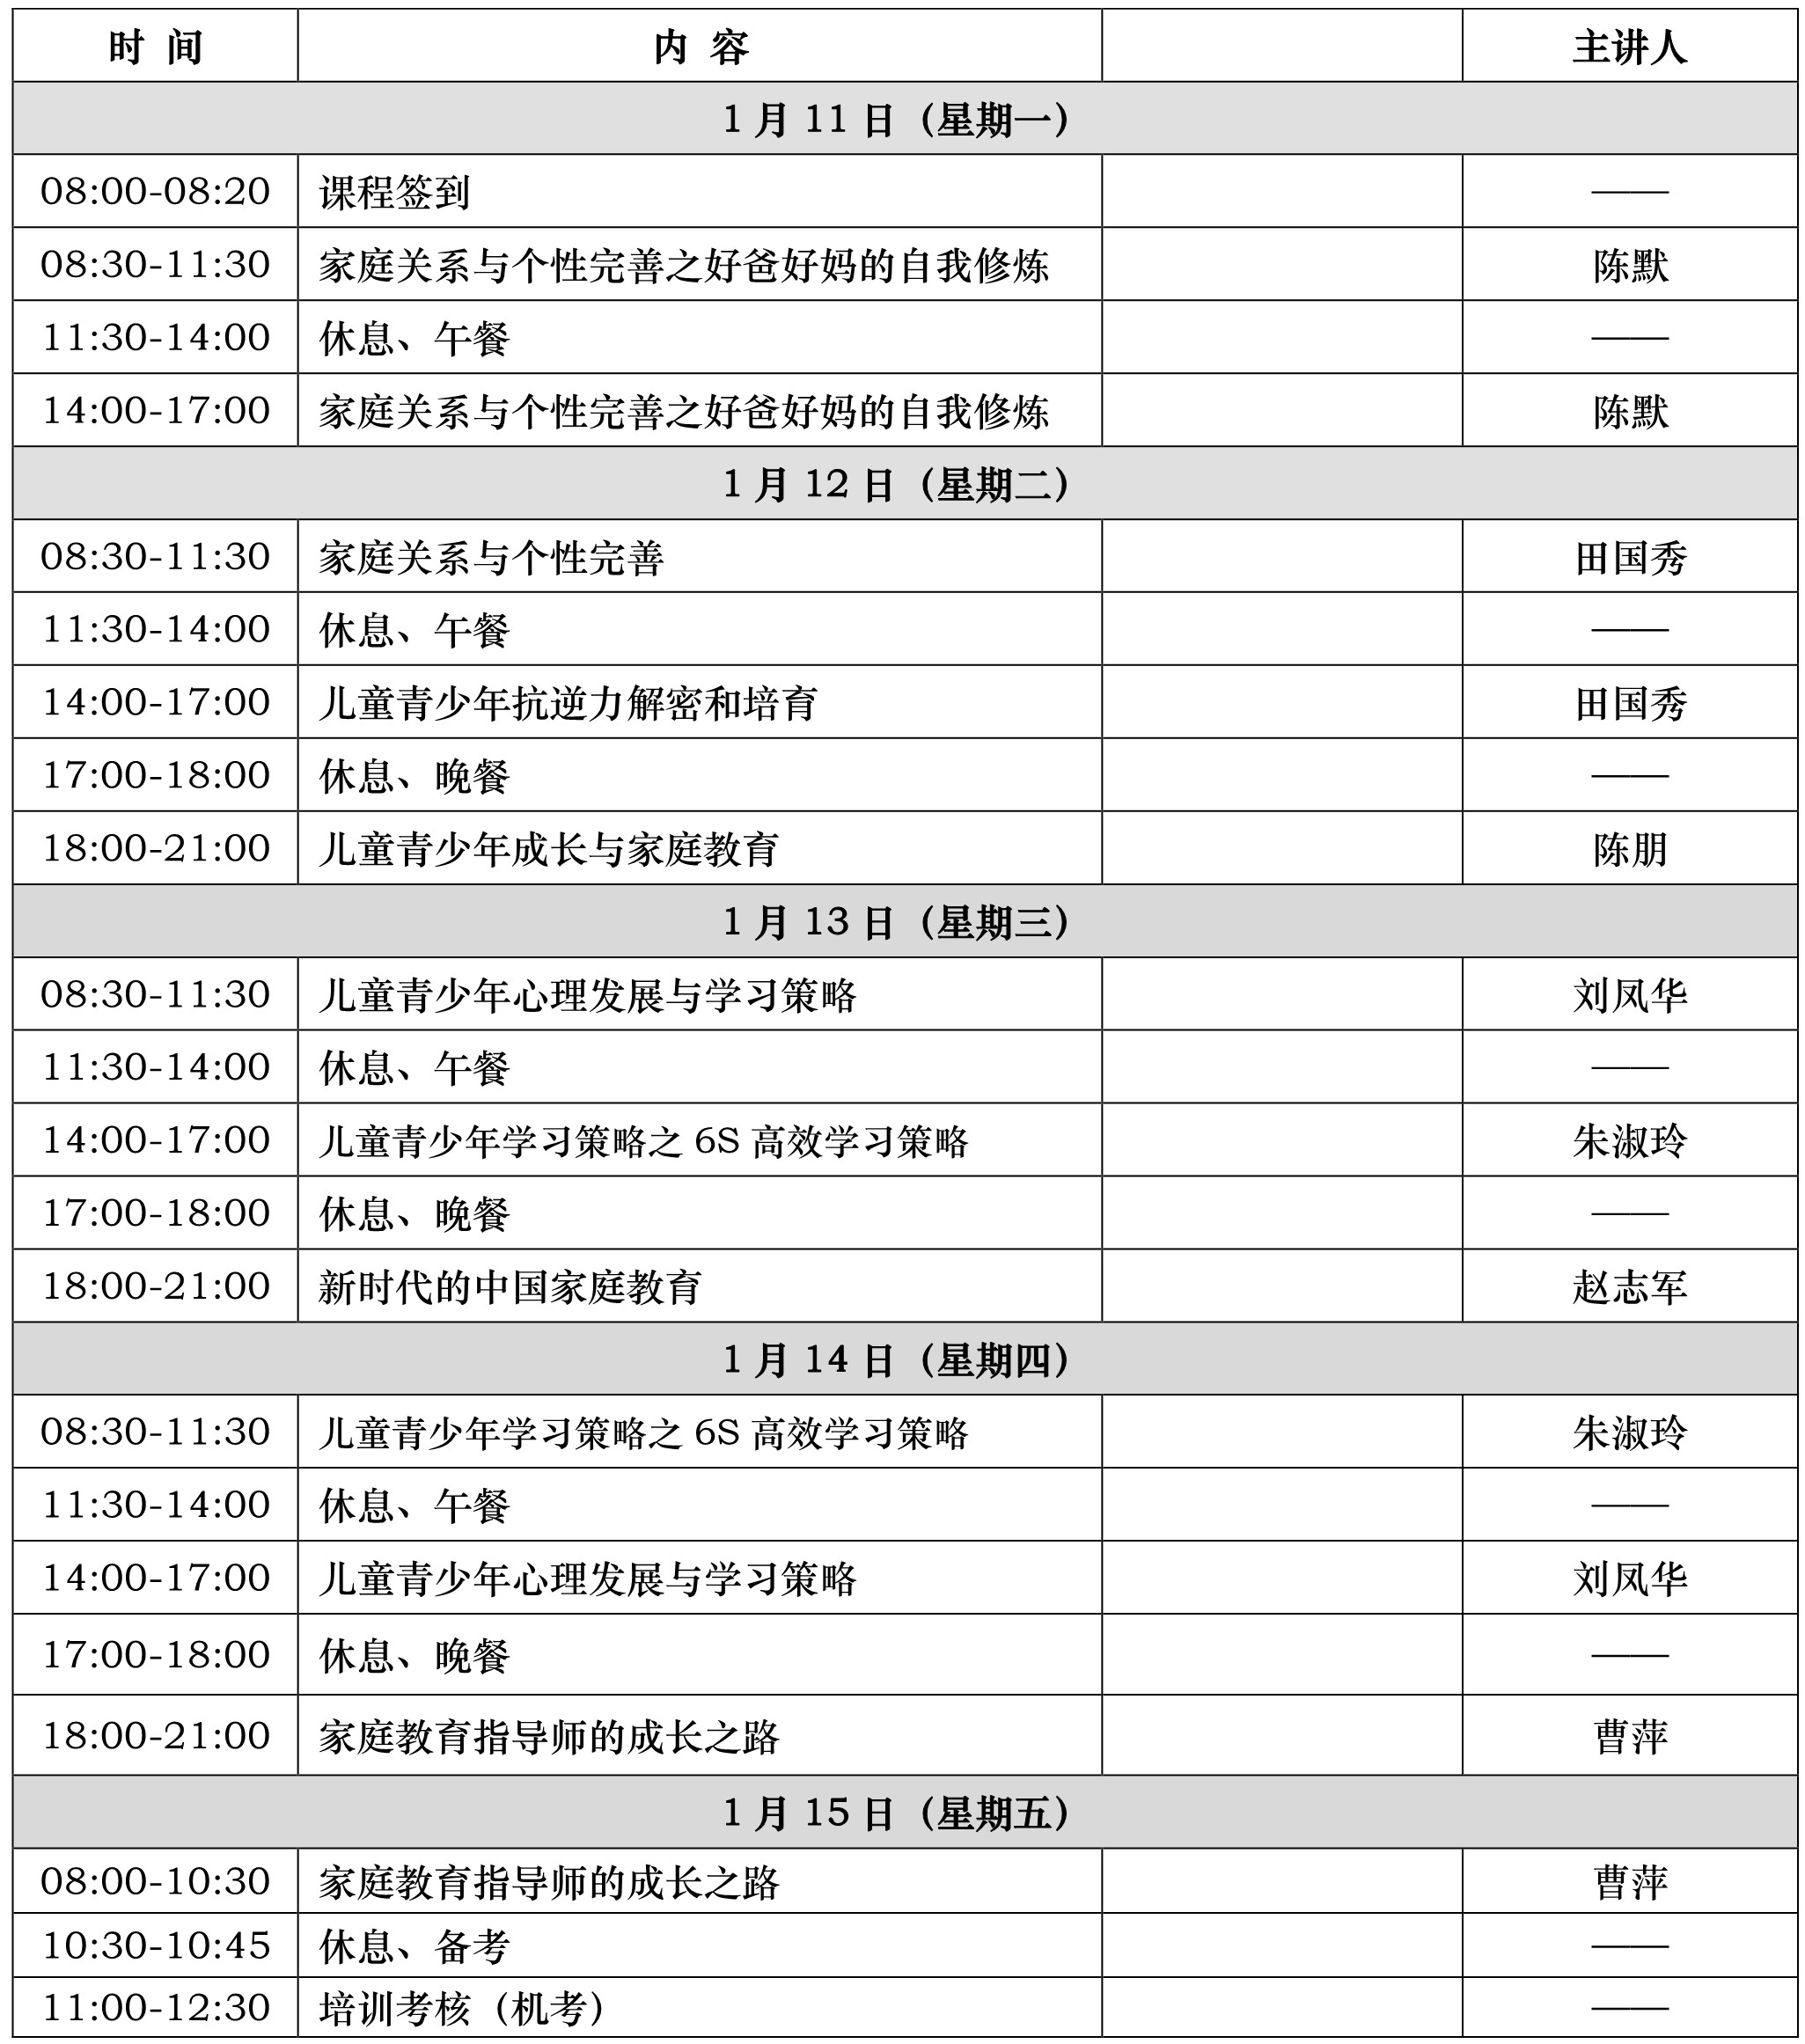 附件1：新东方第98期家庭教育指导师培训议程(1月直播班).jpg